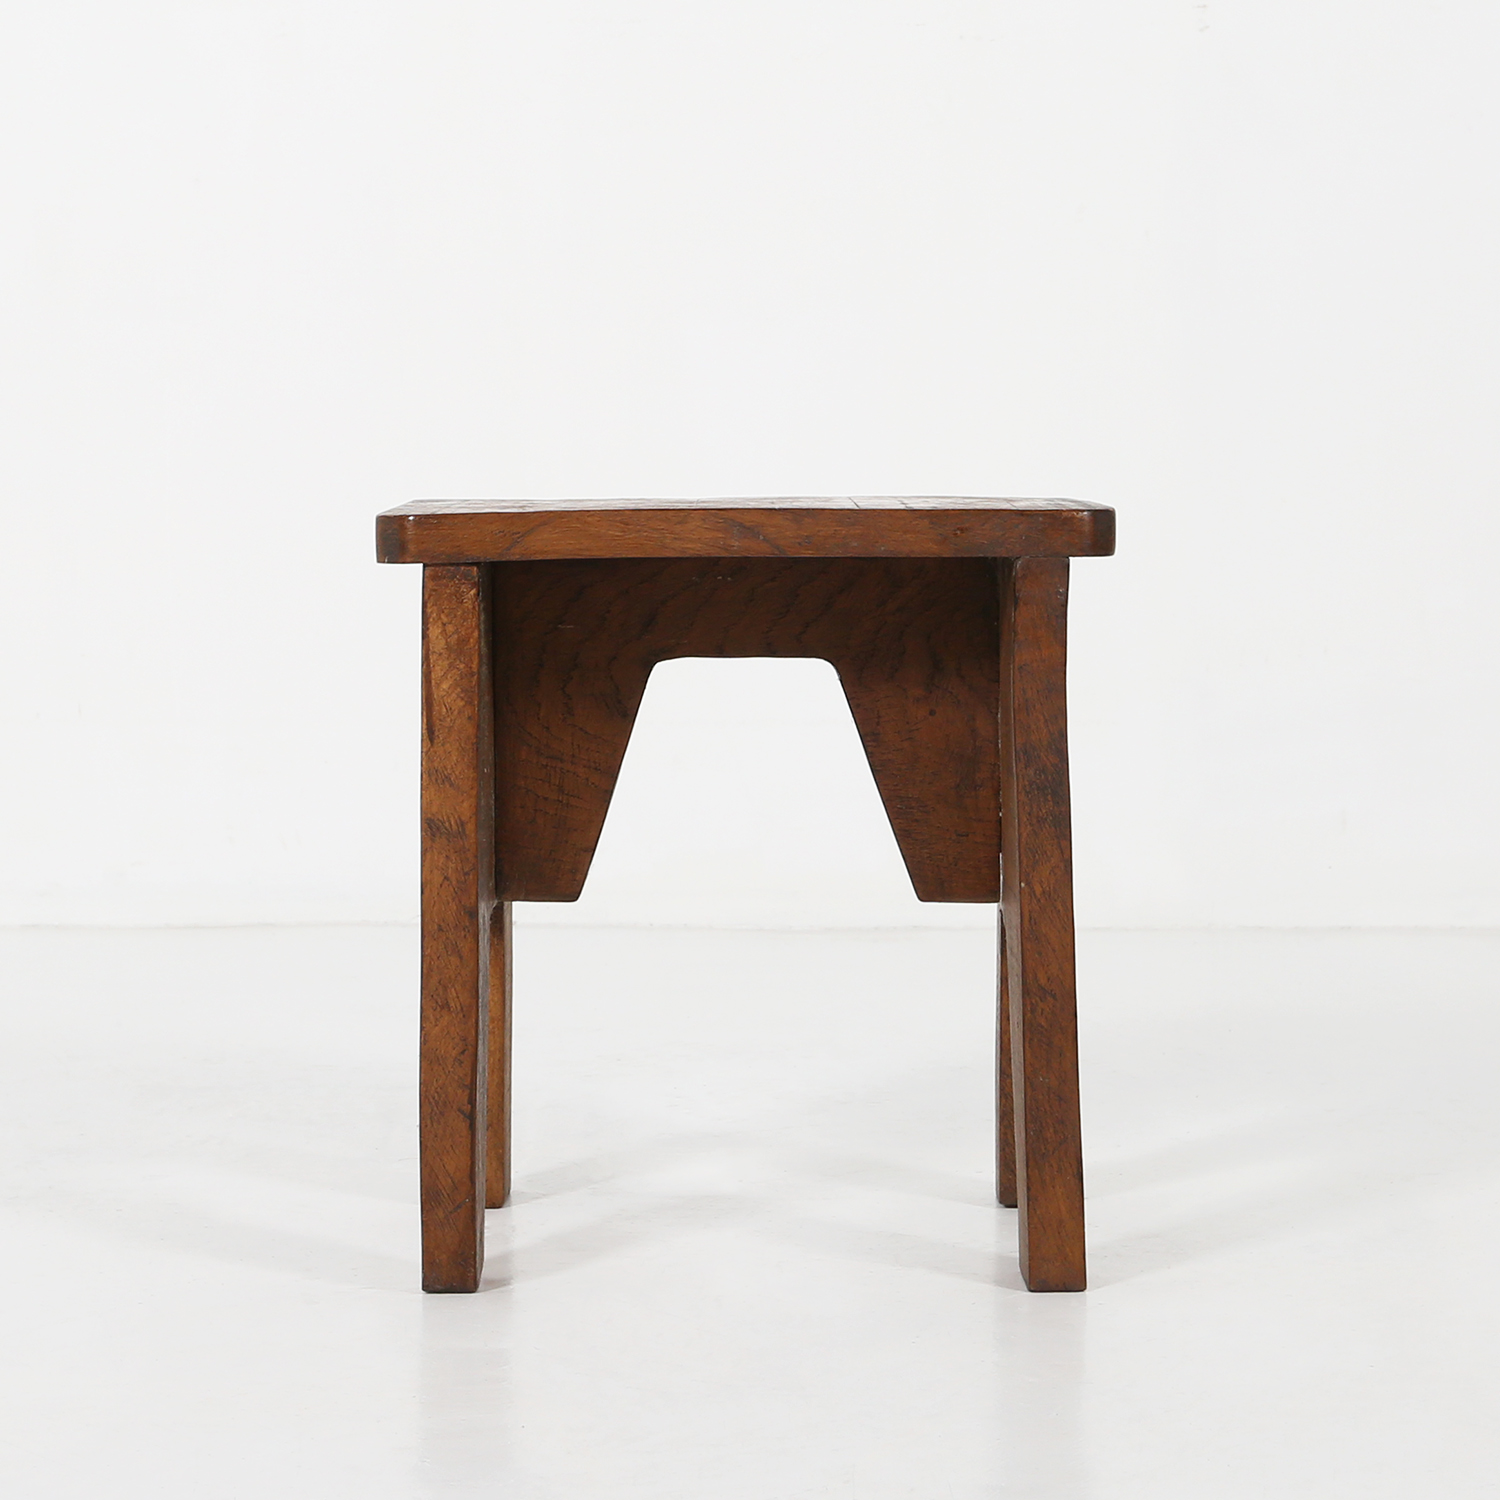 Wooden stool Ca.1900